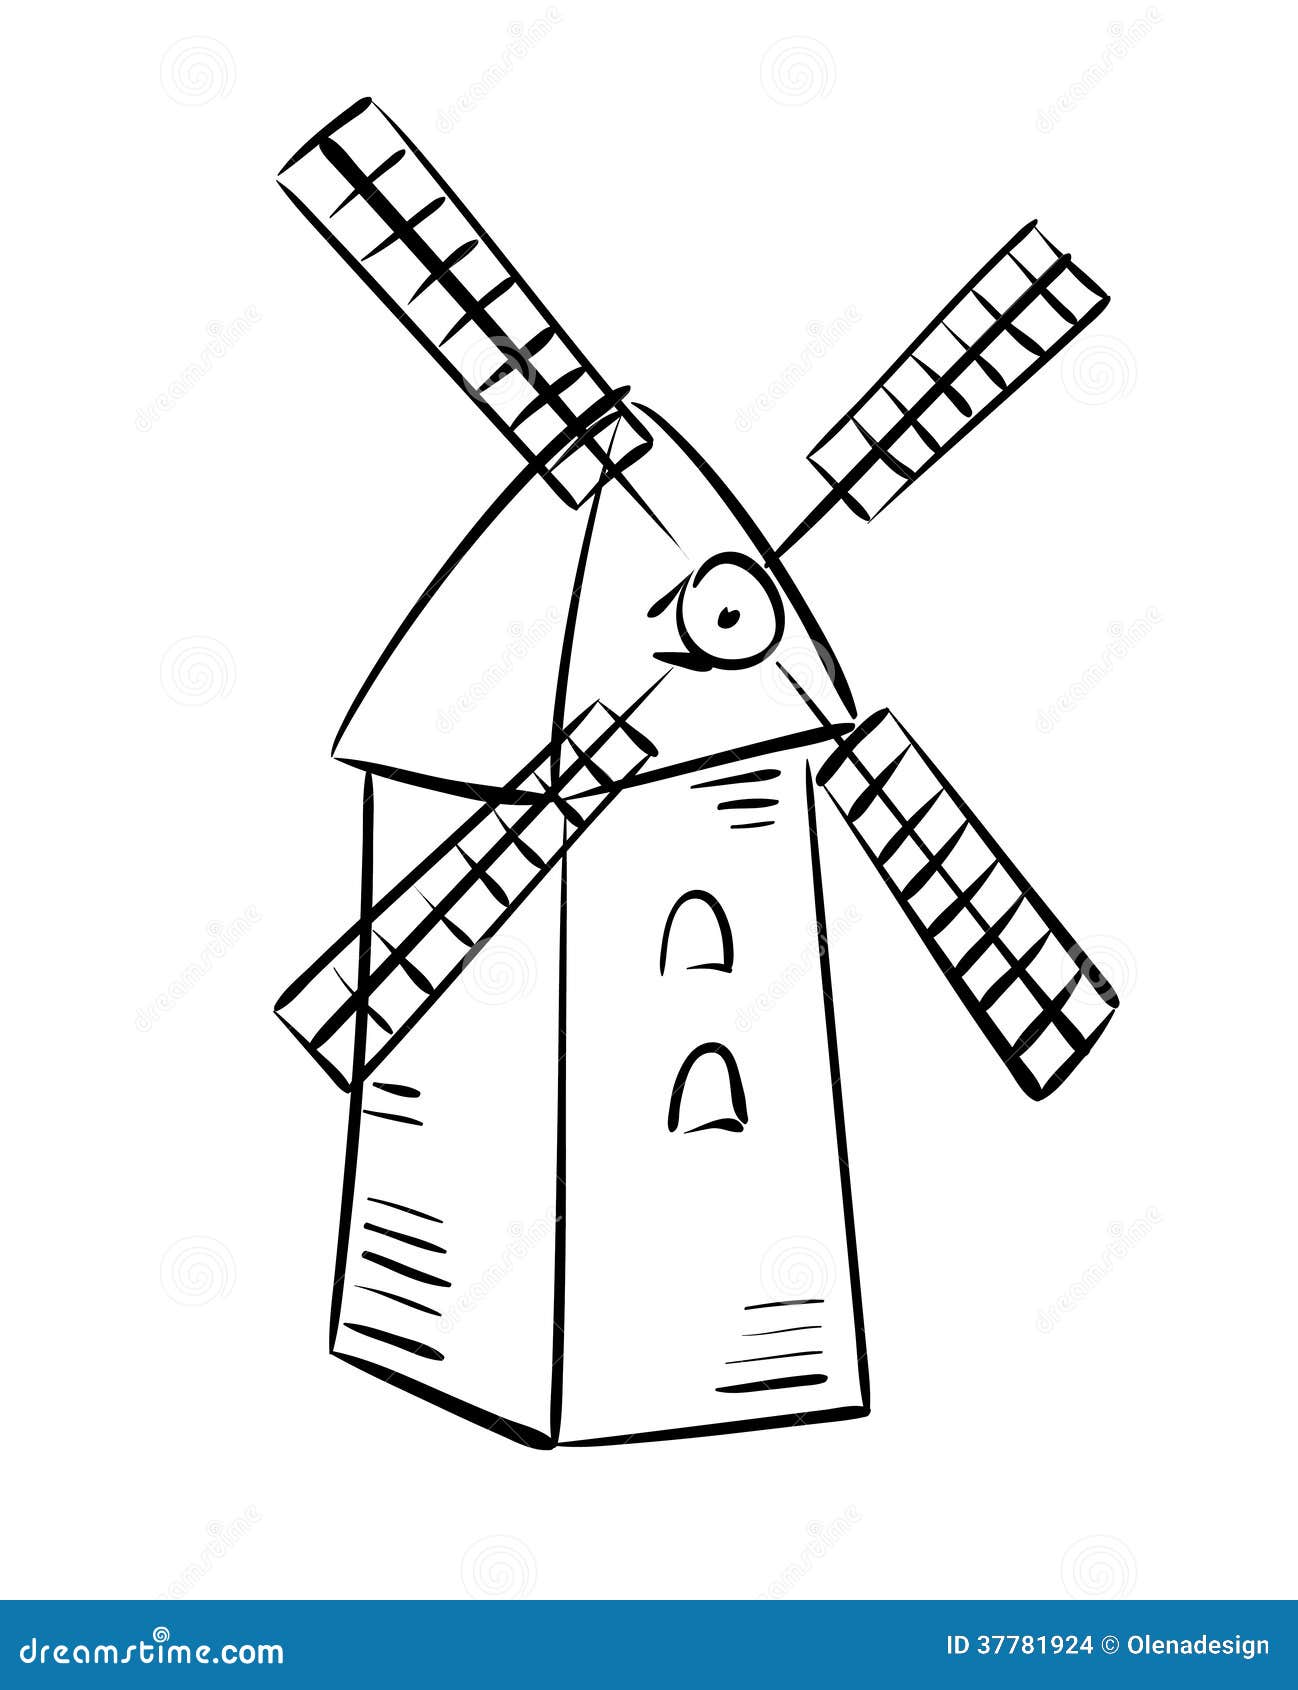 Amish windmill